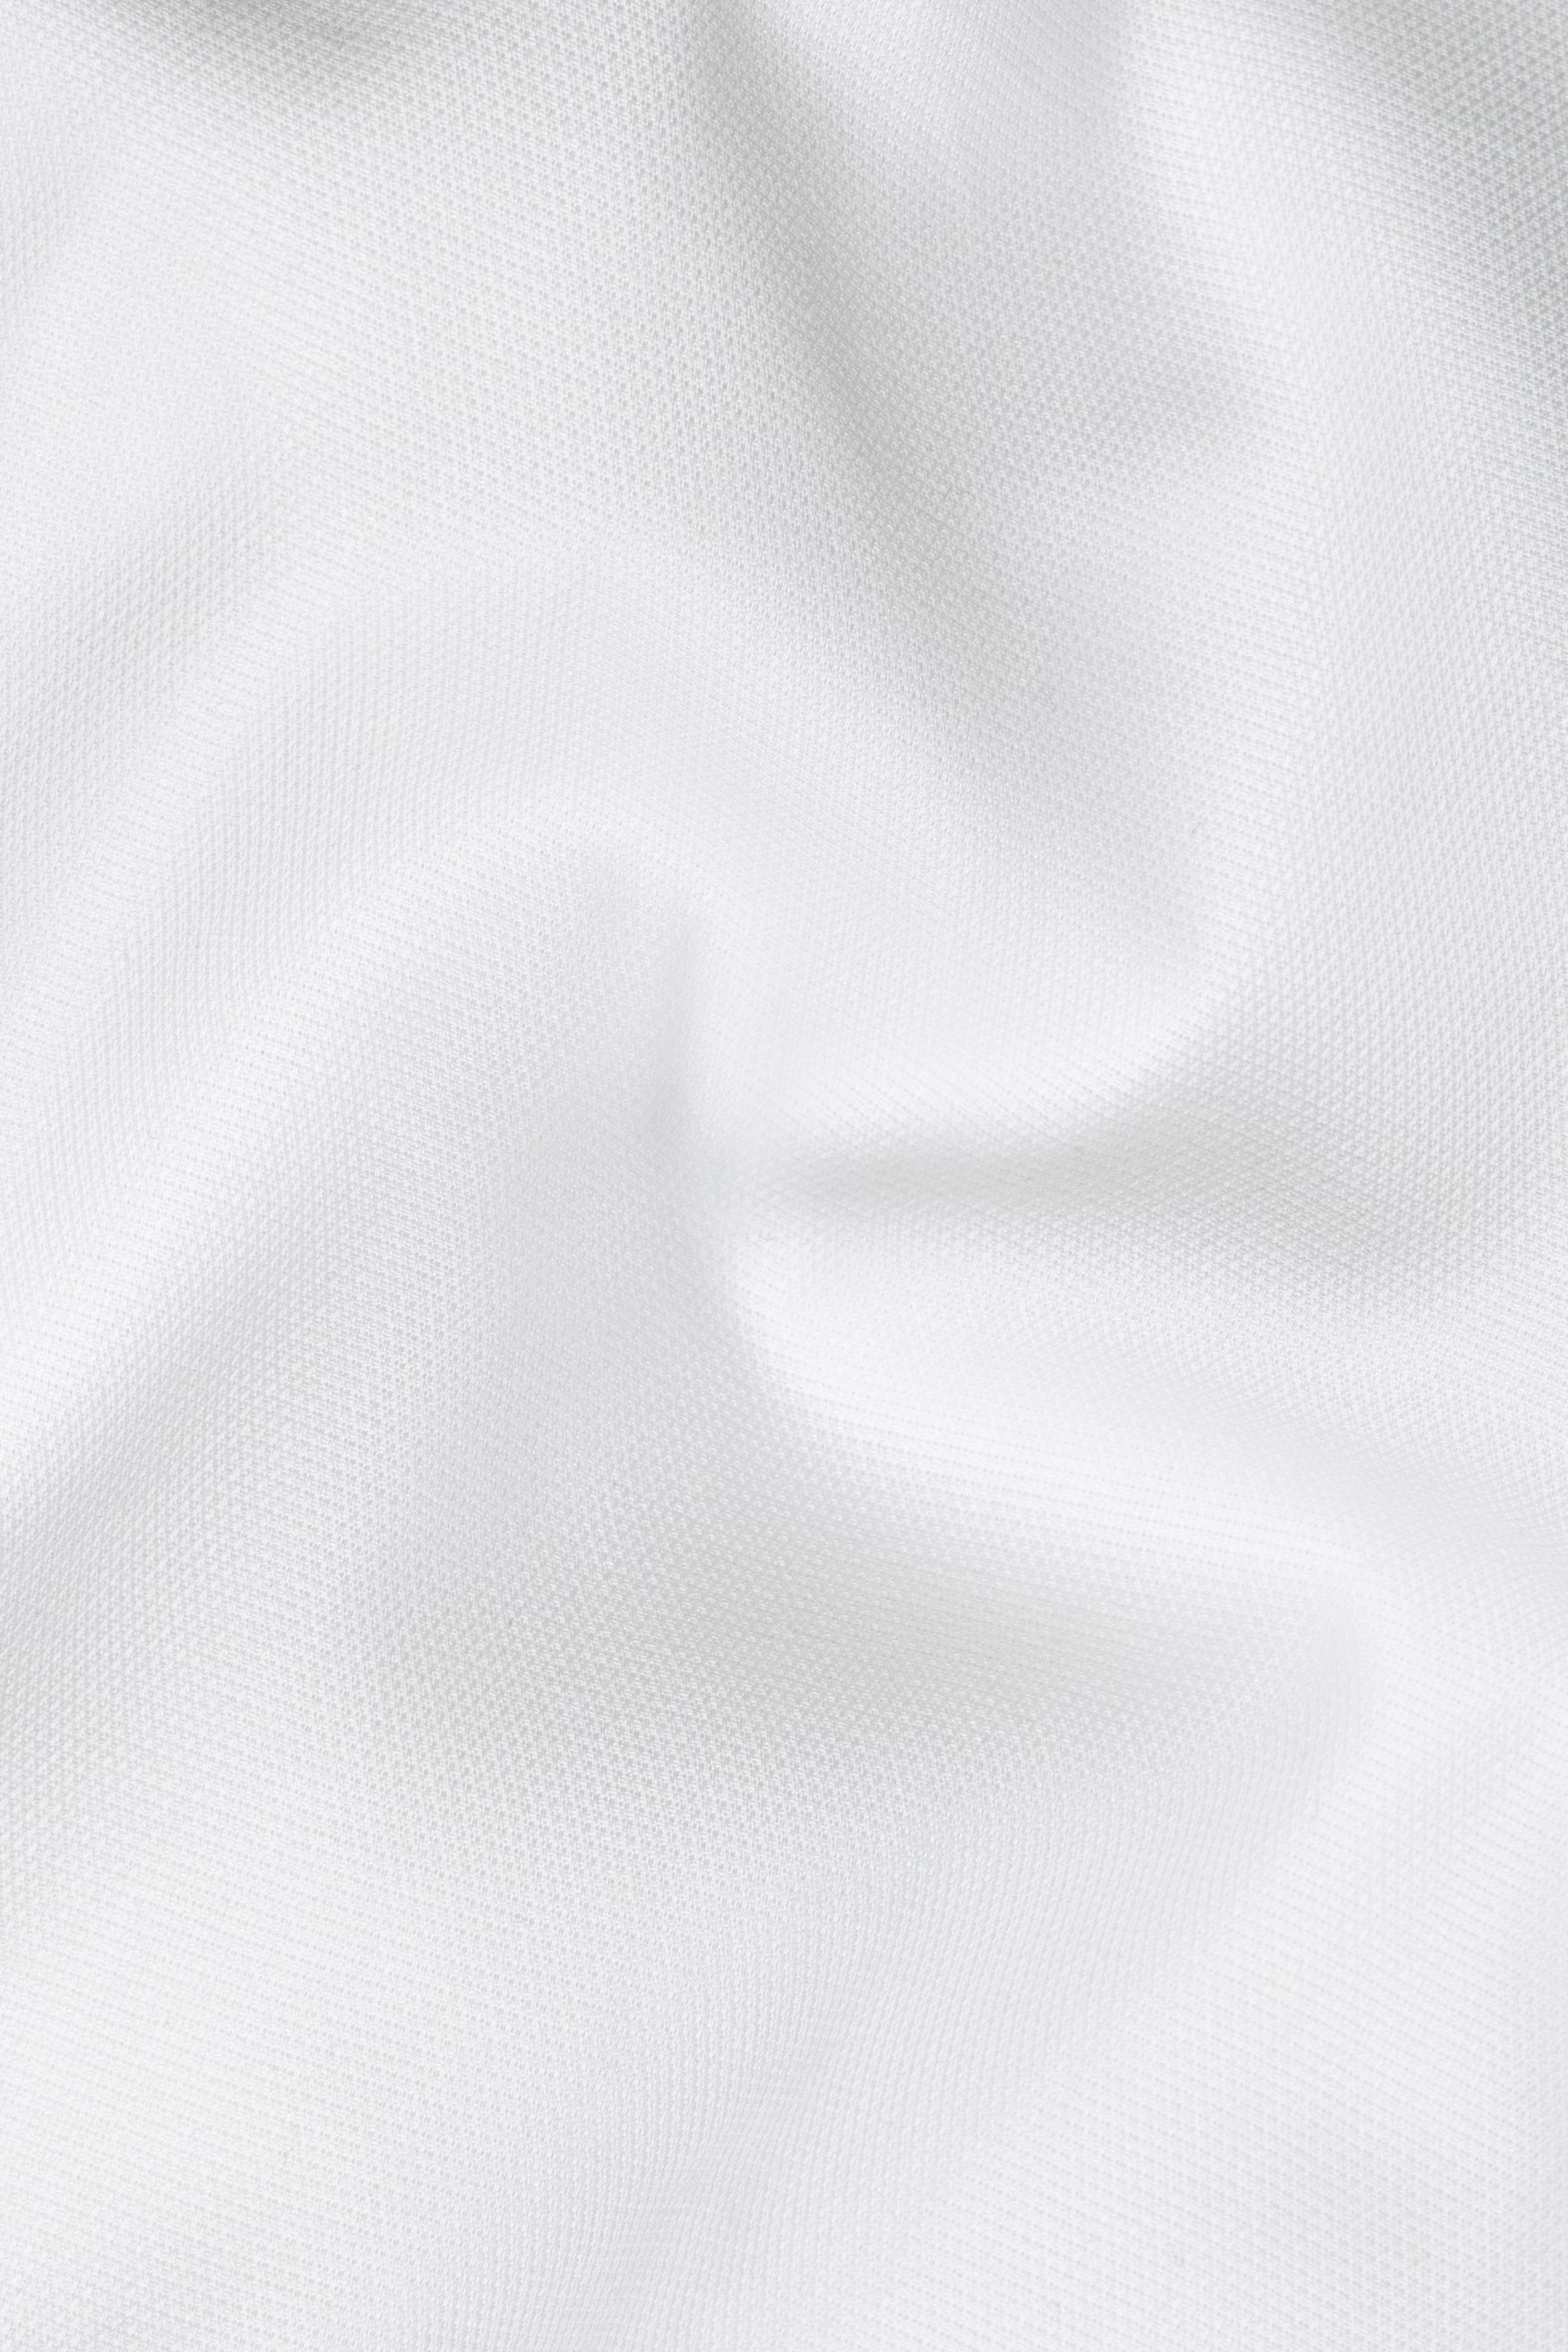 Bright White Dobby Textured Premium Giza Cotton Designer Overshirt with Zipper Closure